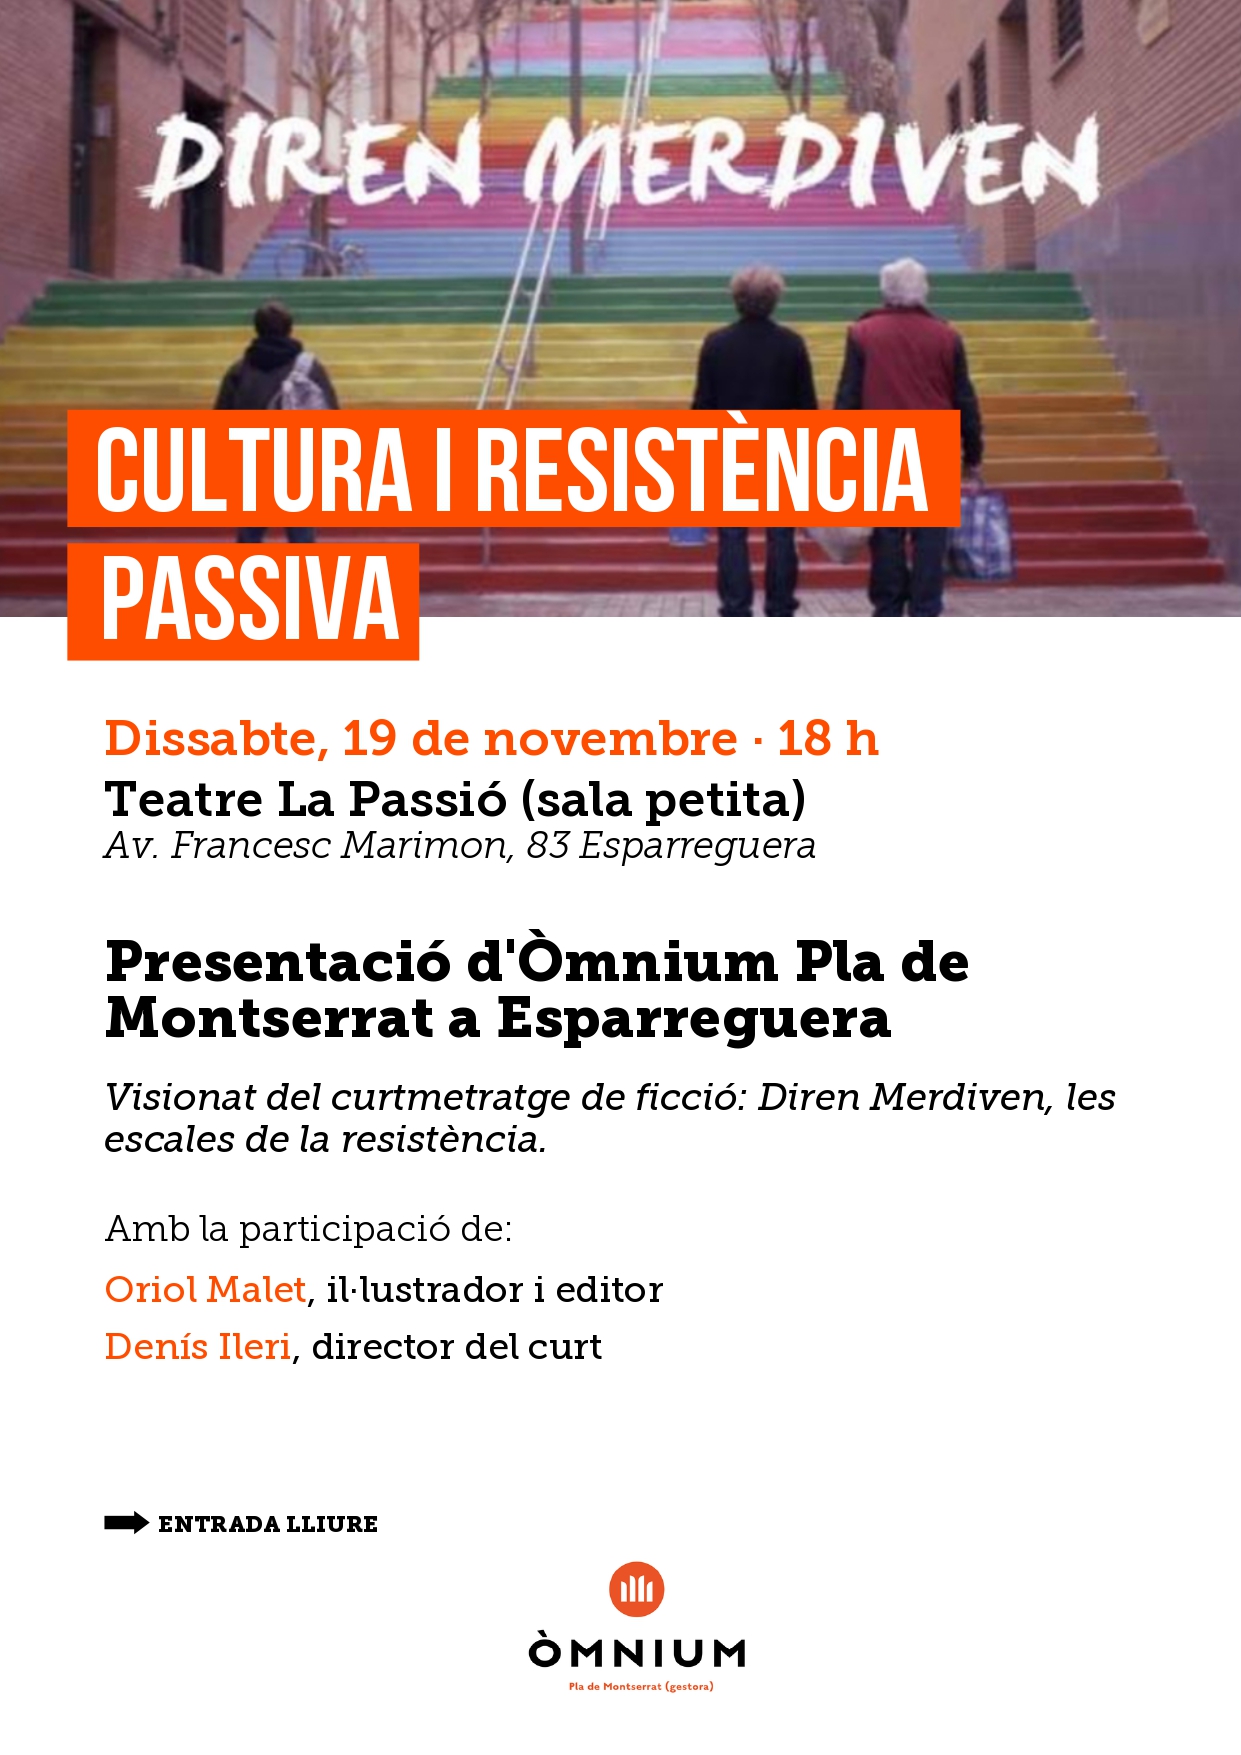 La Bustia presentacio Omnium Pla de Montserrat Esparreguera